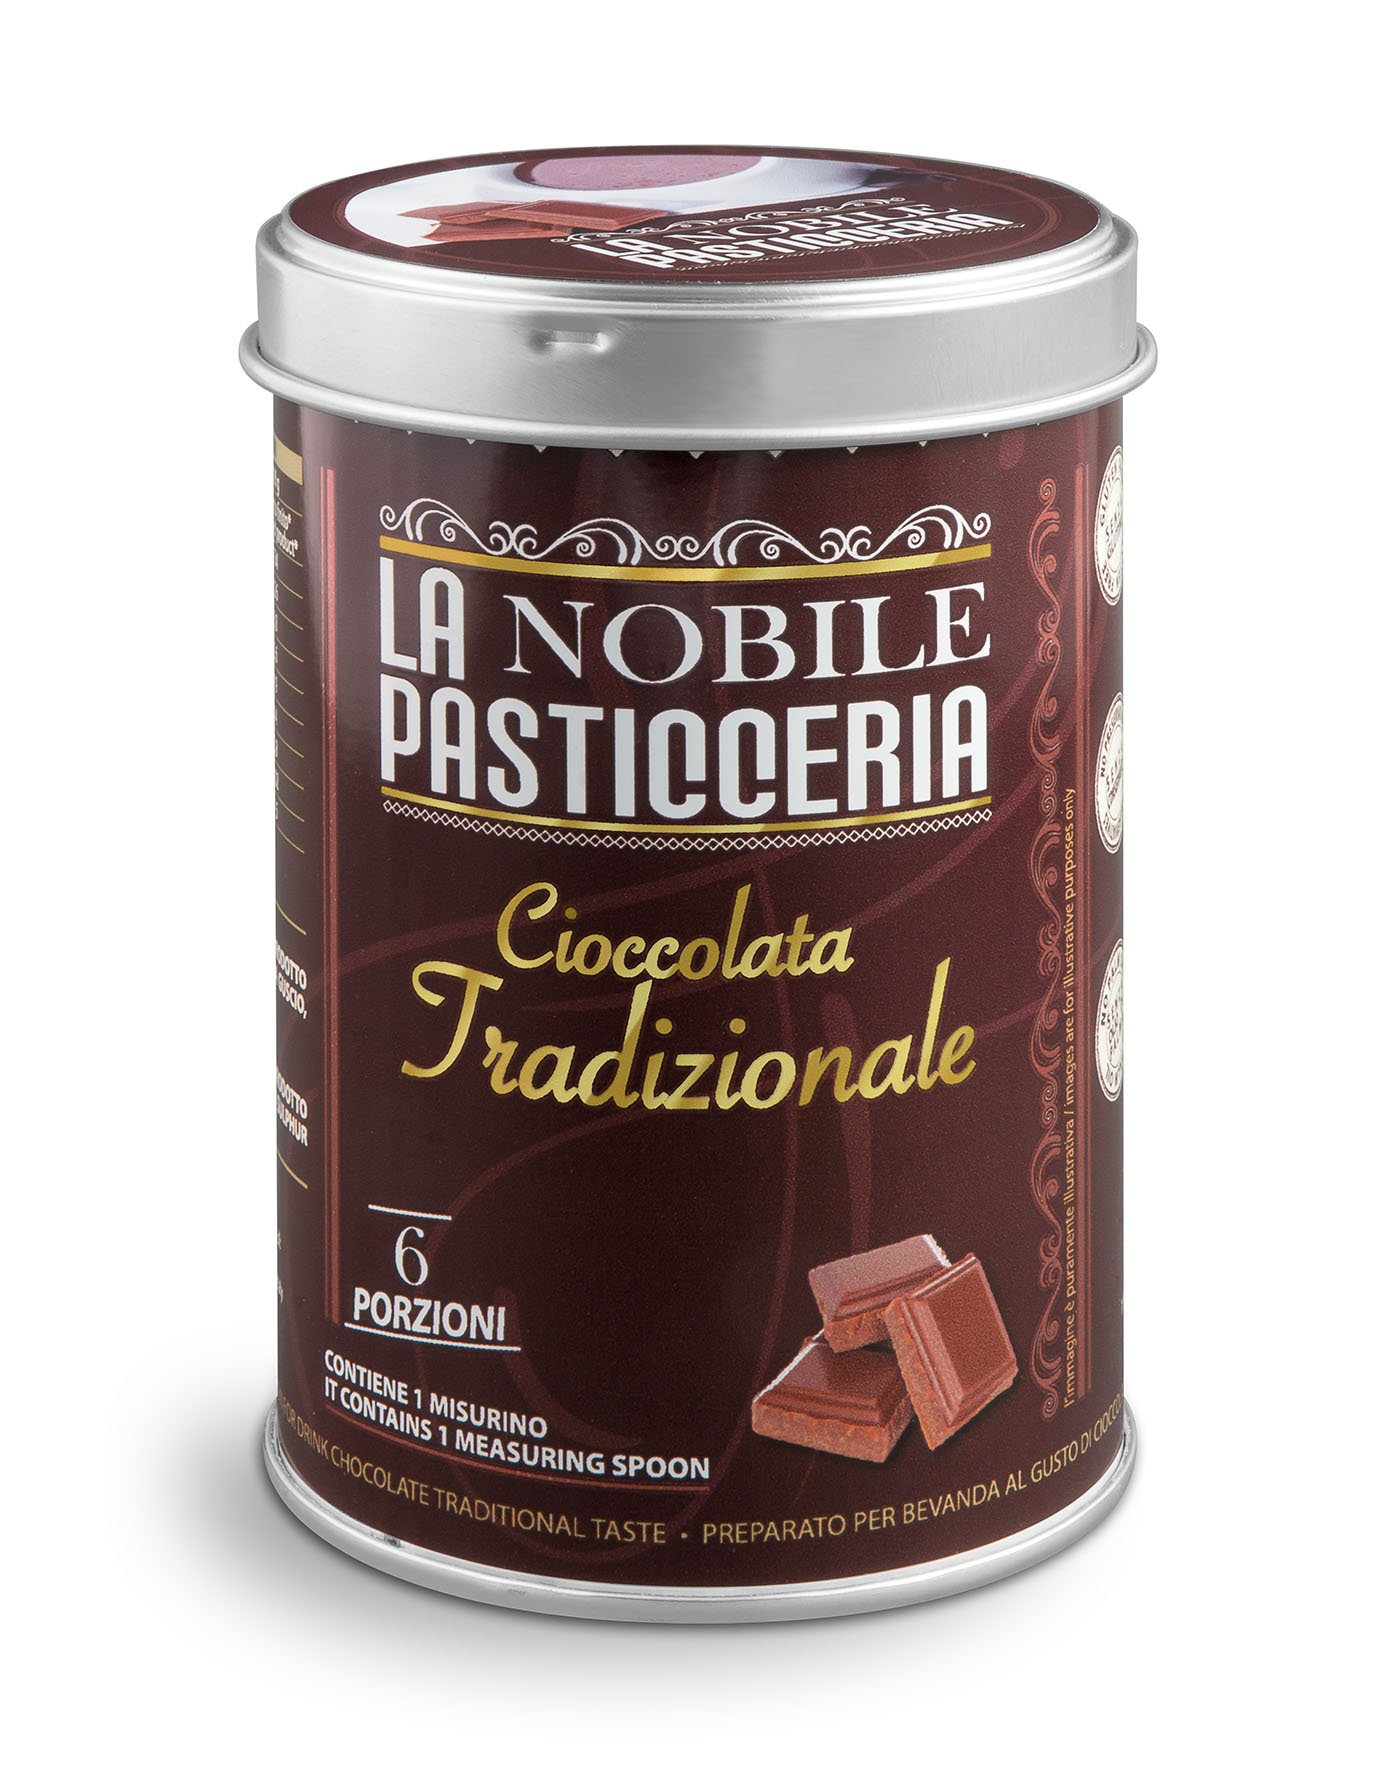 La Nobile Pasticceria - Cioccolata Tradizionale